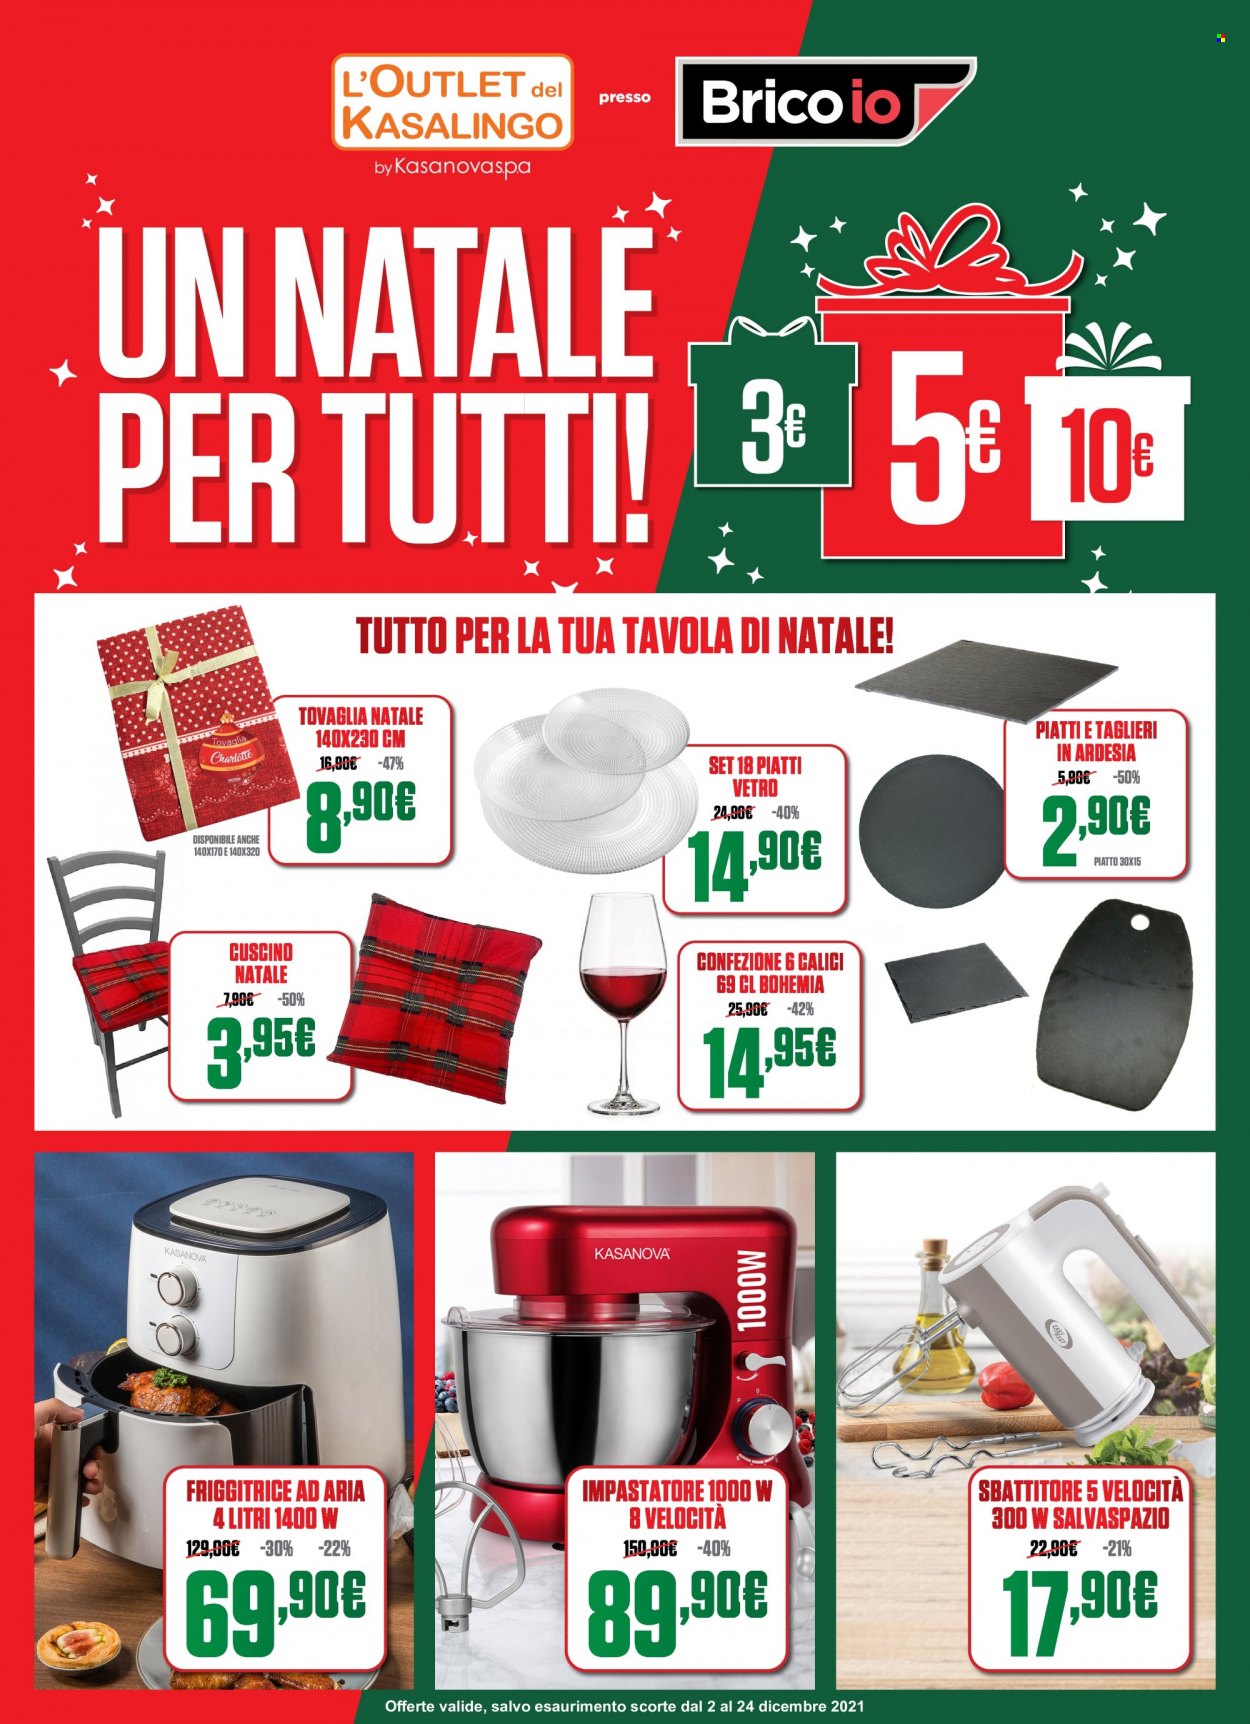 thumbnail - Volantino Brico io - 2/12/2021 - 24/12/2021 - Prodotti in offerta - sbattitore, piatti, friggitrice, calice, tovaglia, cuscino. Pagina 1.